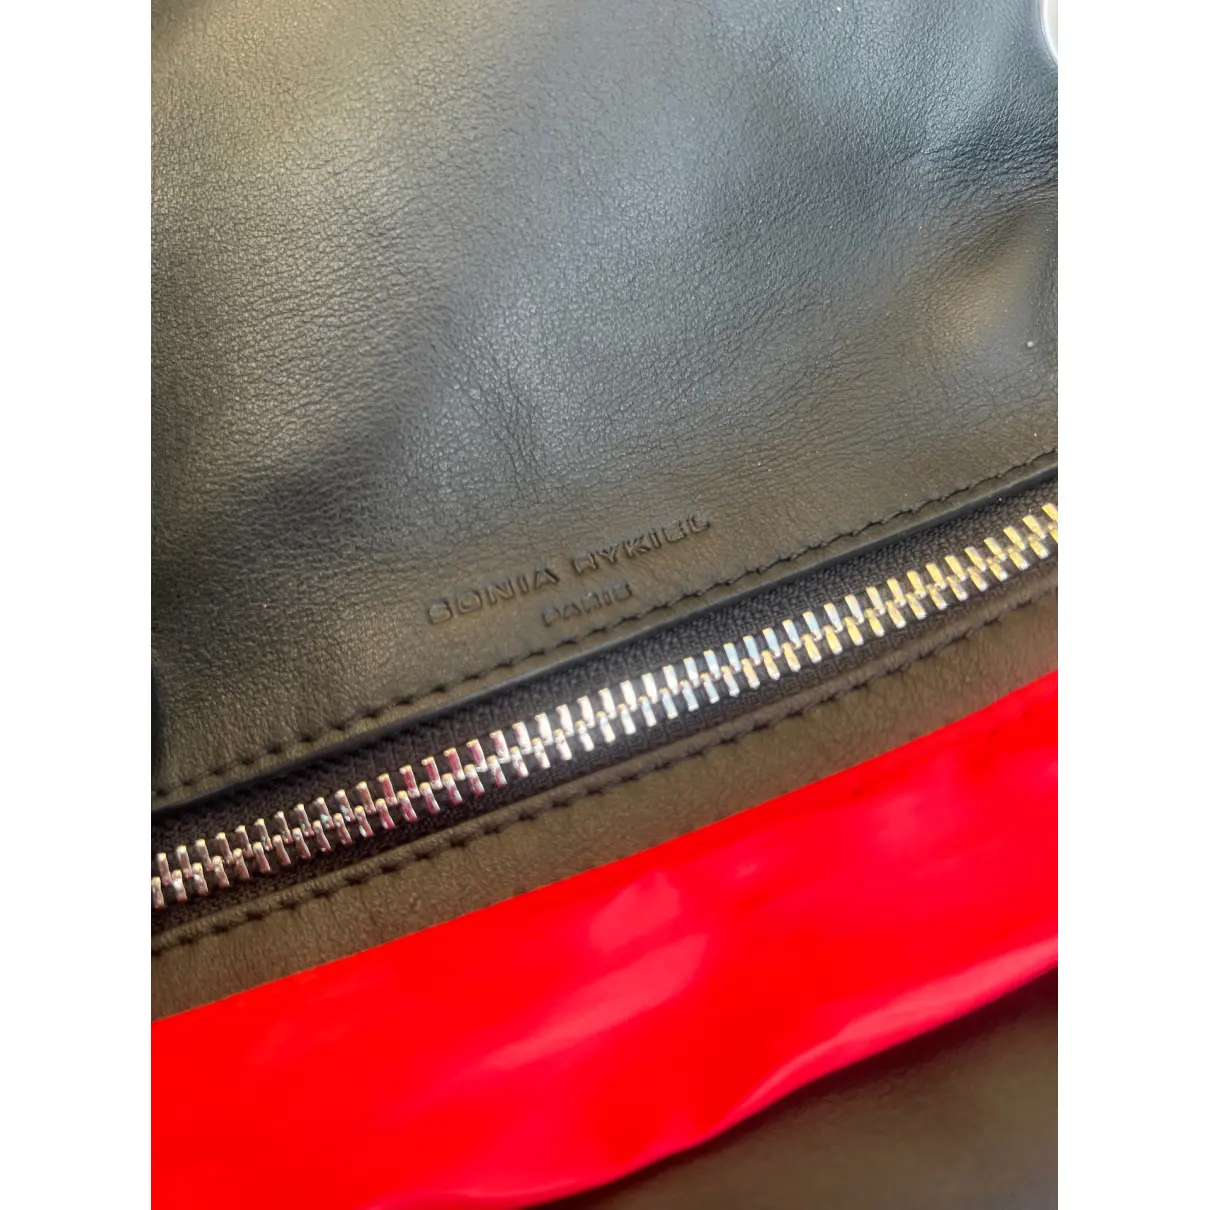 Le Copain cloth handbag Sonia Rykiel - Vintage